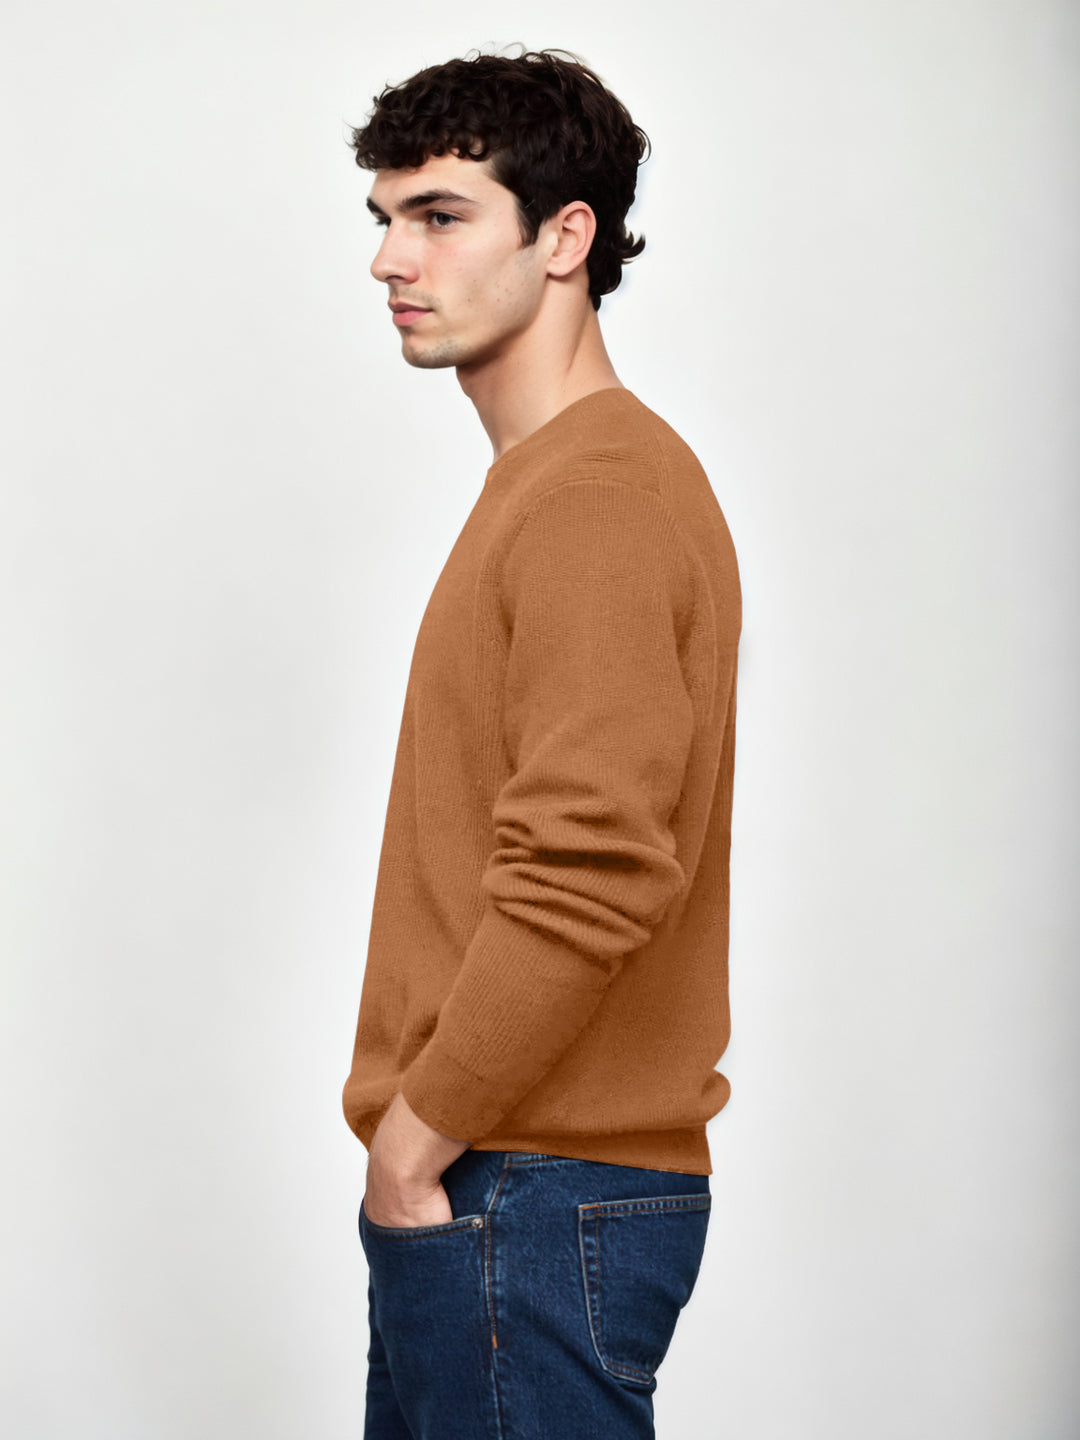 Hemstes Mustard Knitted Full Sleevs Sweatshirt For Men